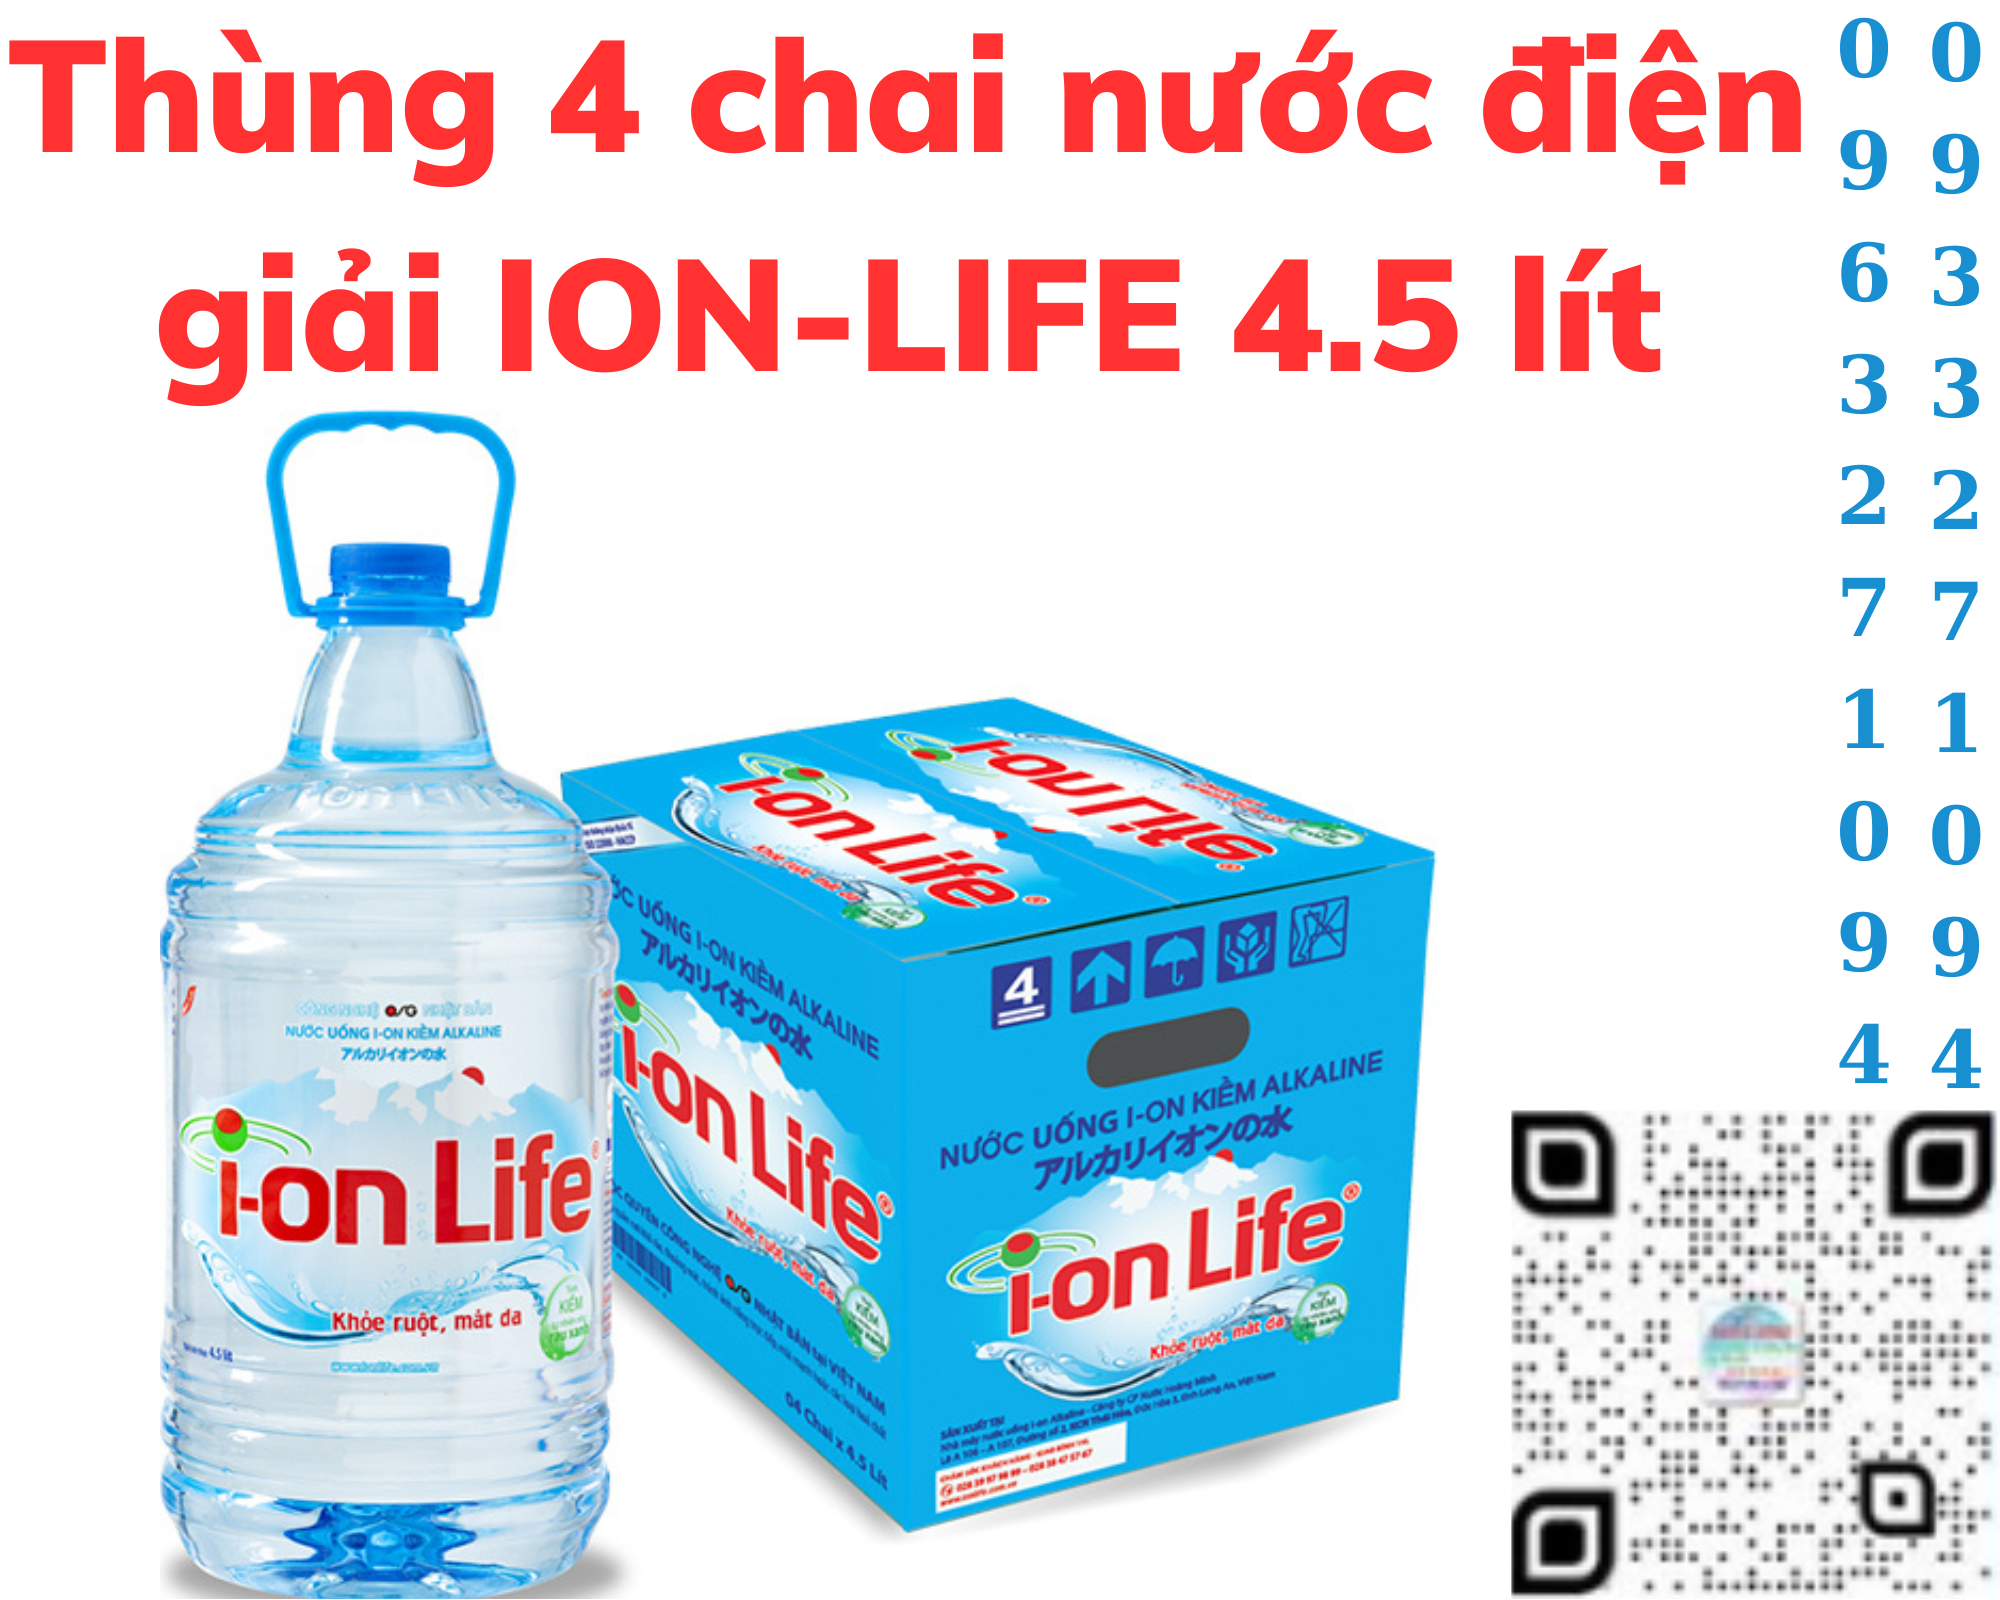 Thùng 4 chai nước điện giải ion kiềm akaline I-ON LIFE 4.5 lít